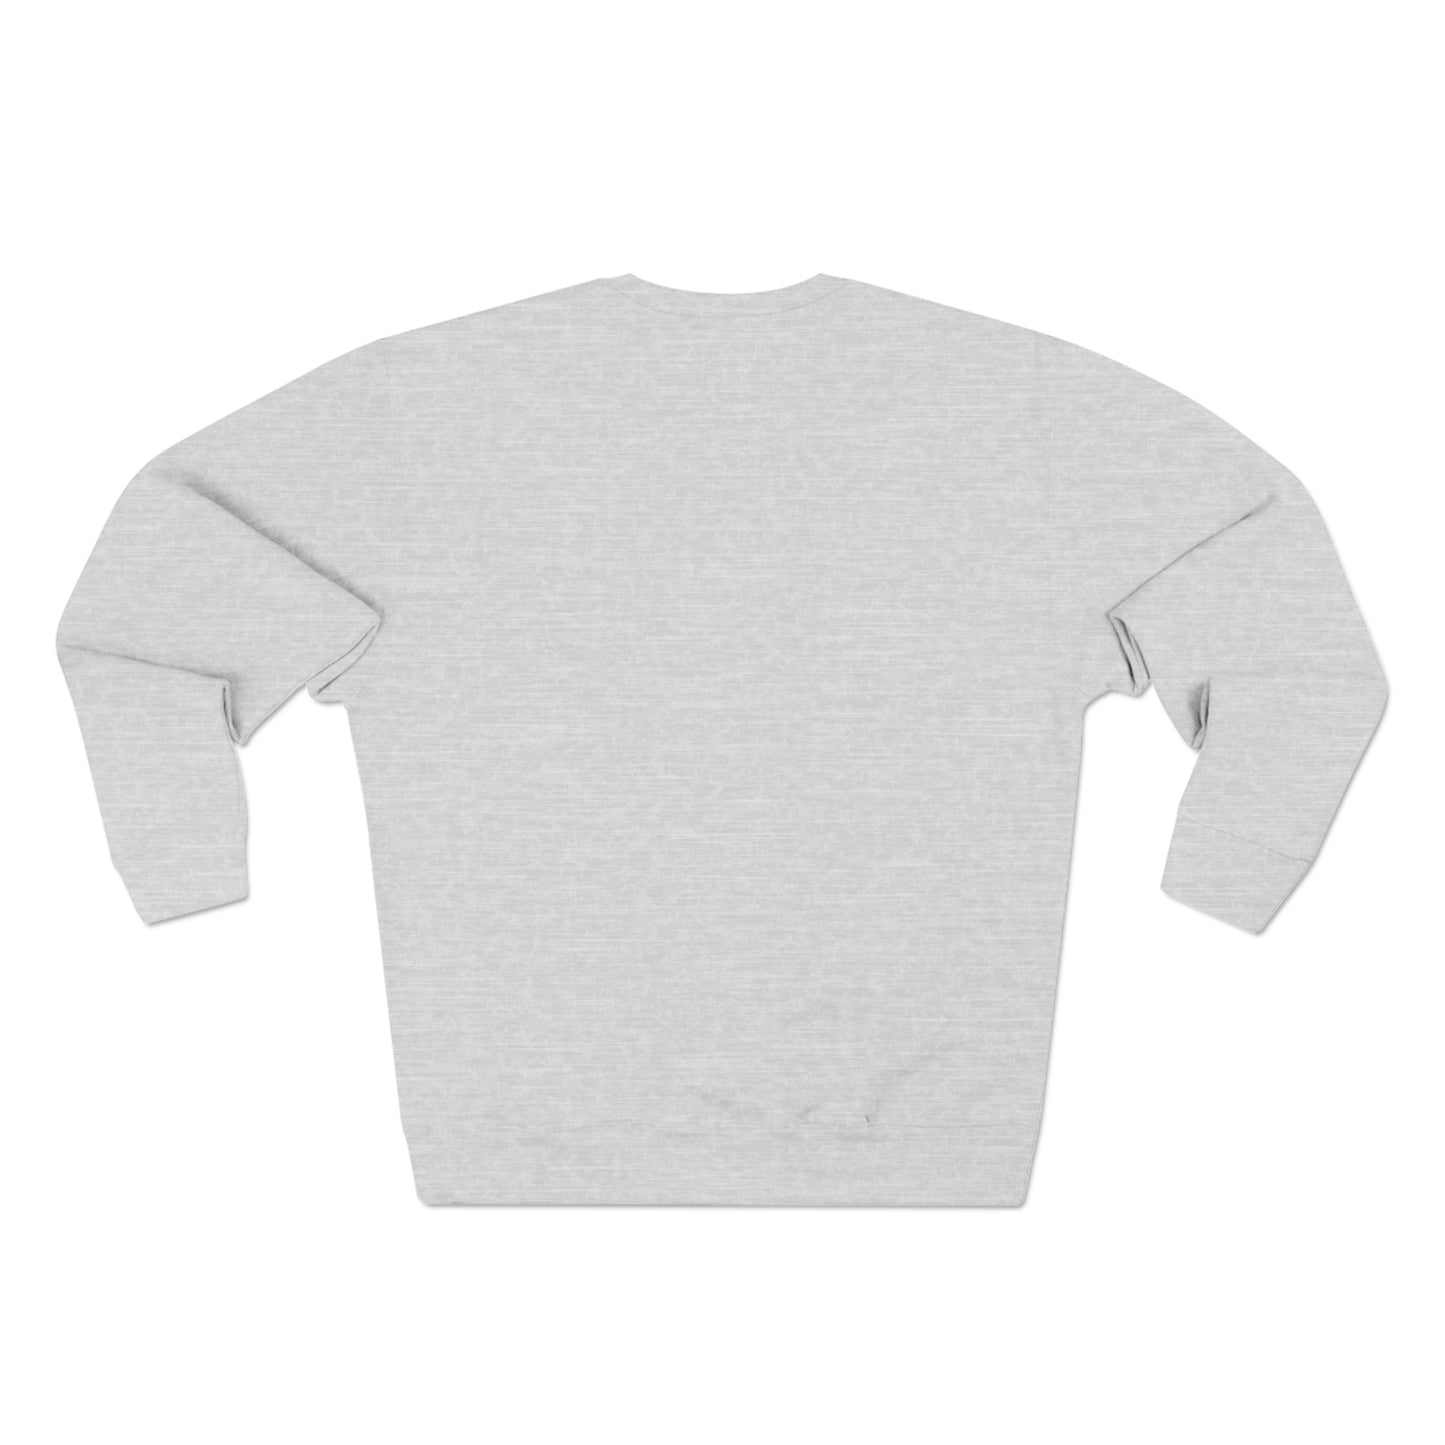 BG "Wax On - Wax Off" Premium Crewneck Sweatshirt